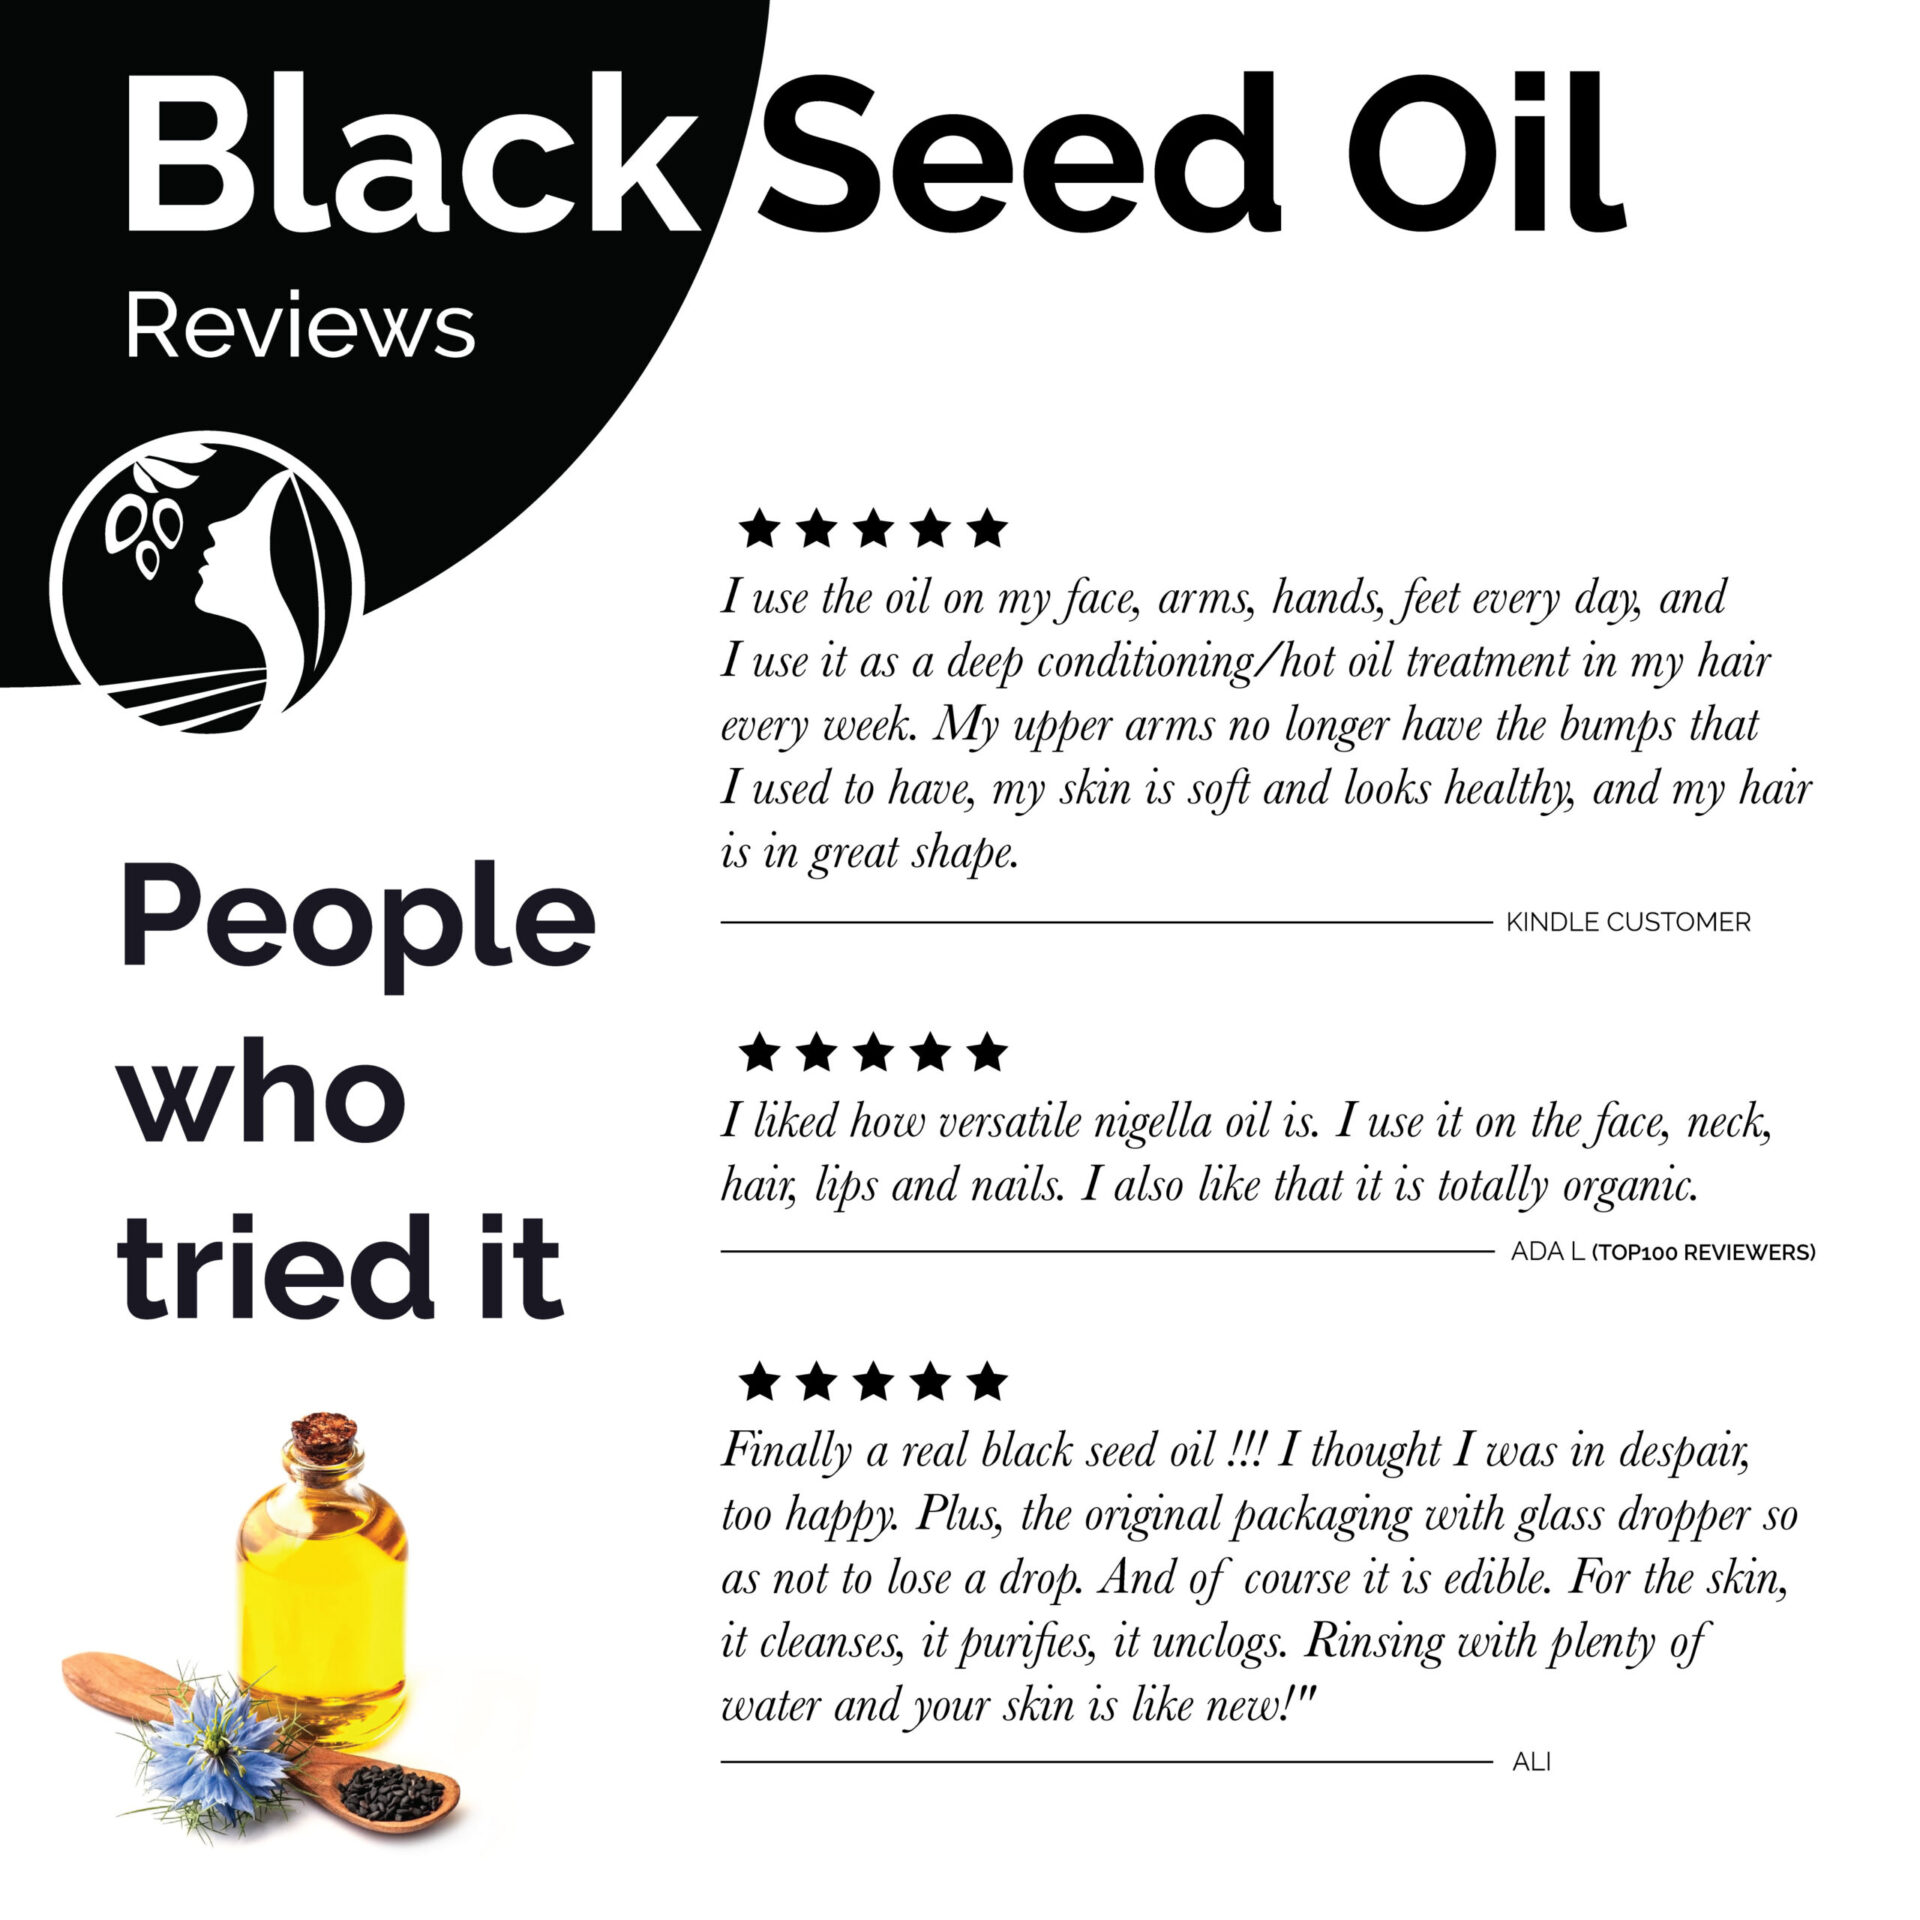 Black seed oil/ Black cumin seed oil/ Kalonji oil/ Nigella sativa oil -  50ml Essential Oils